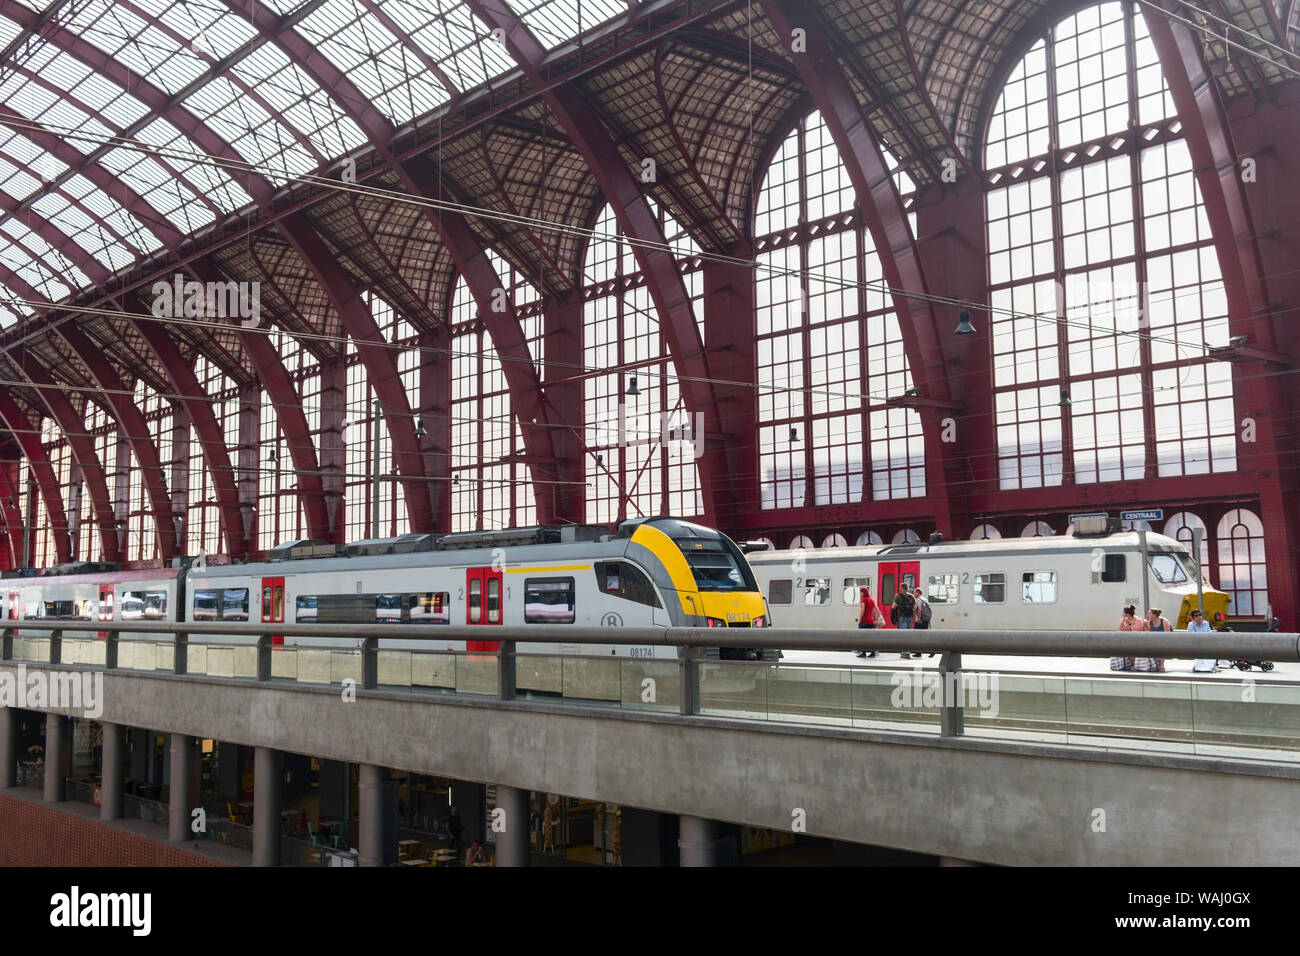 Antwerpen Centraal railway station Antwerp Belgium Stock Photo